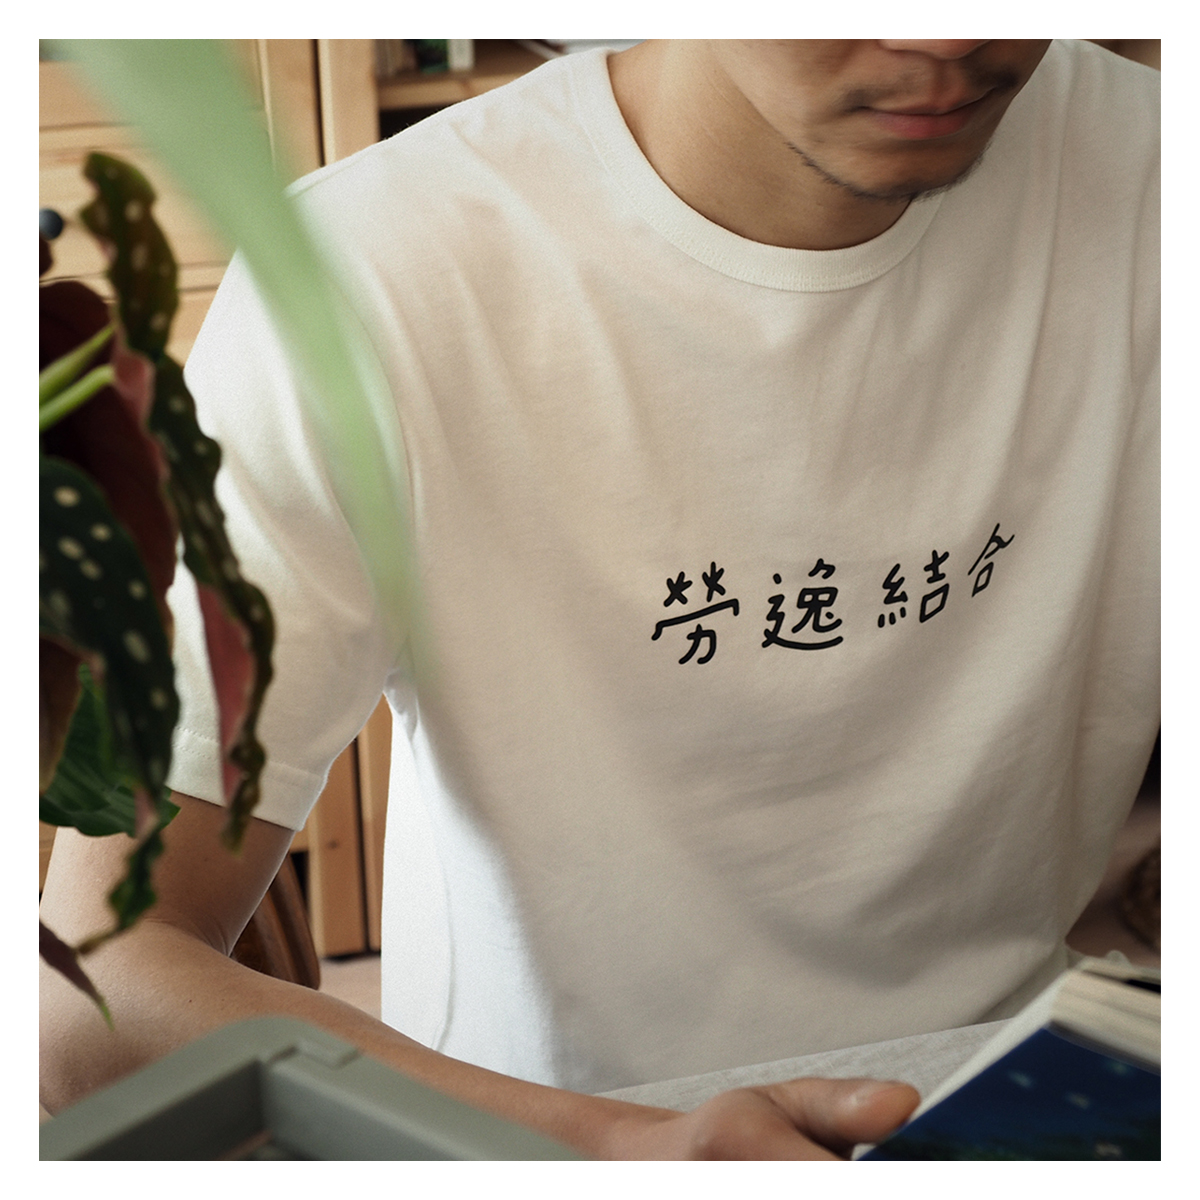 今吉社 劳逸结合印花男款T恤原创设计短袖手写字体文艺清新趣味潮